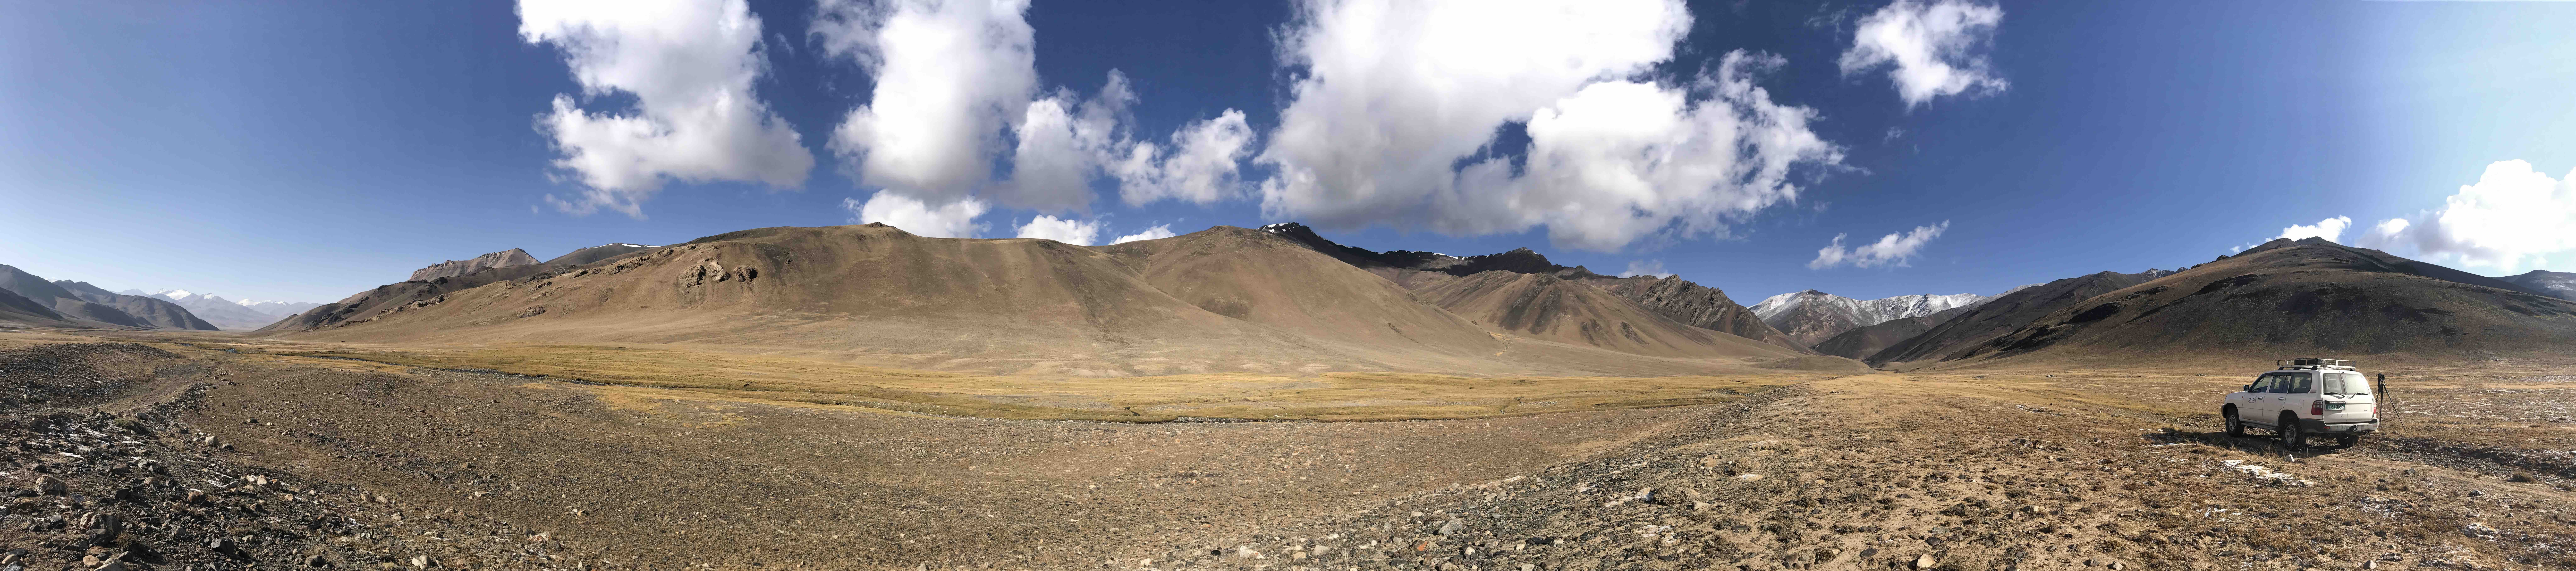 Tajikistan Landscape